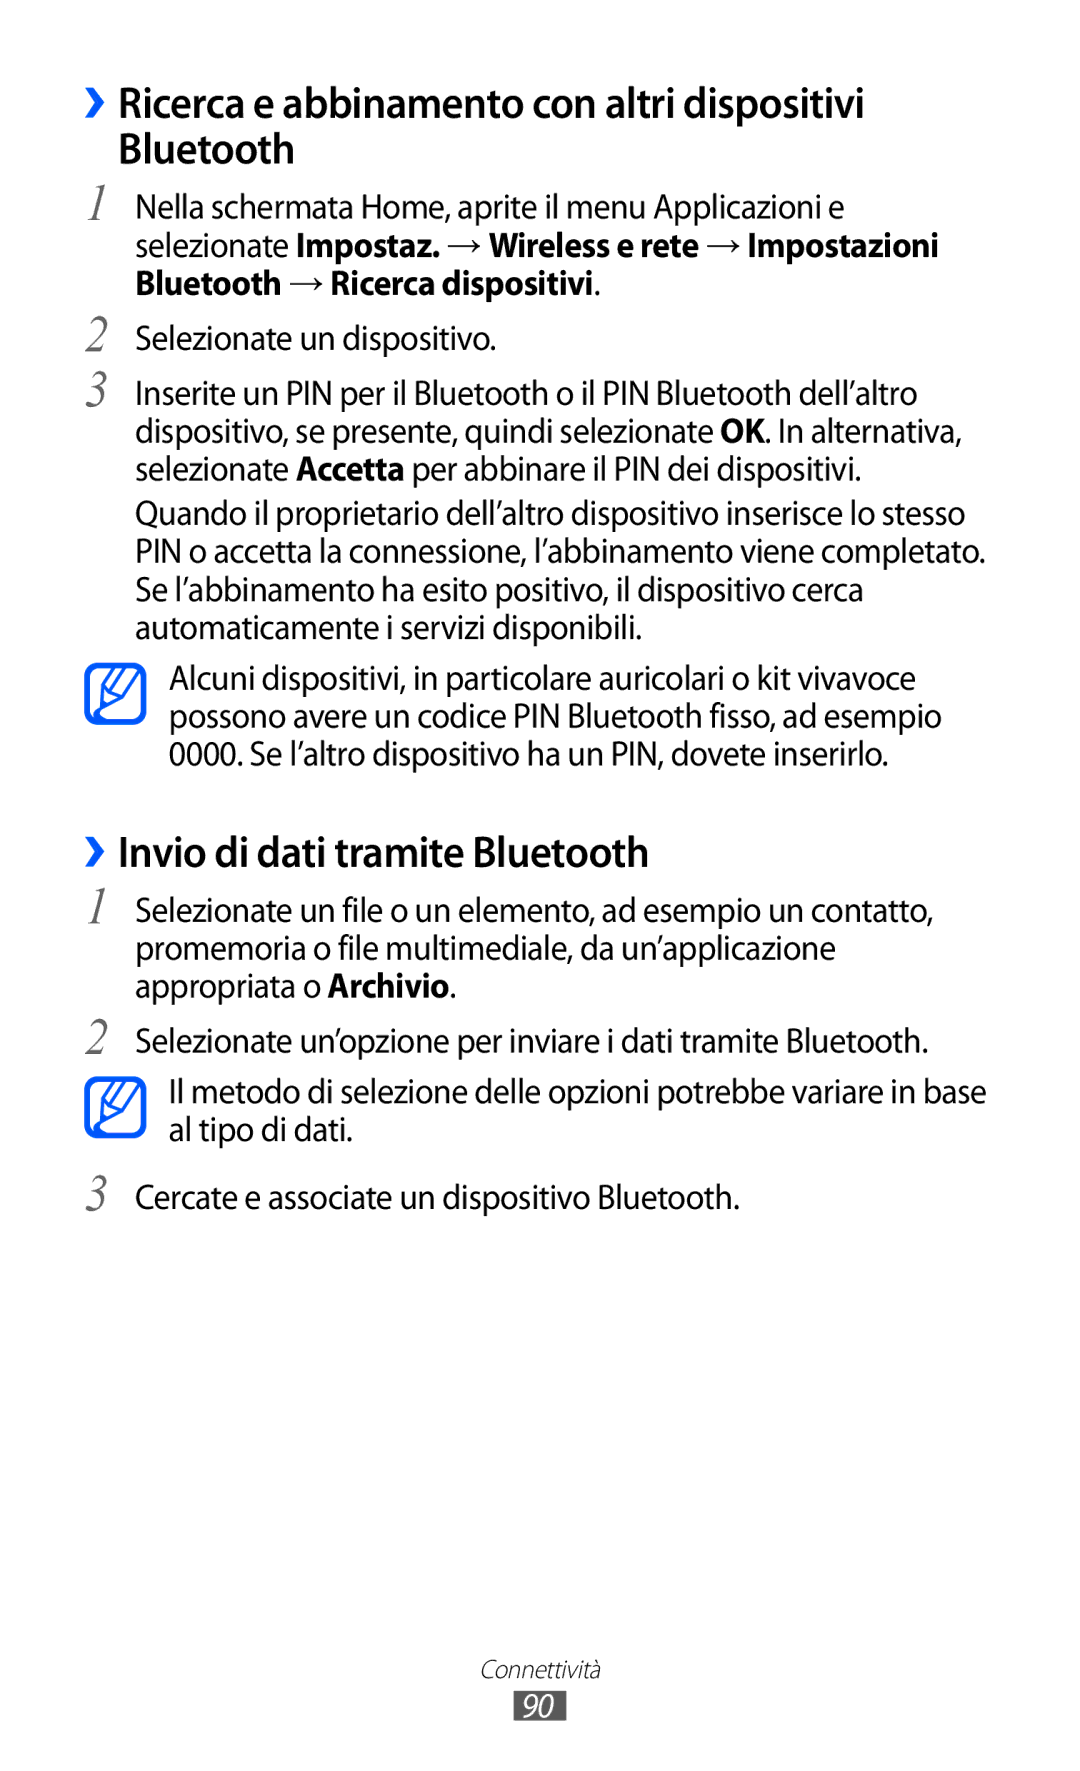 Samsung GT-B5510WSAITV manual ››Ricerca e abbinamento con altri dispositivi Bluetooth, ››Invio di dati tramite Bluetooth 